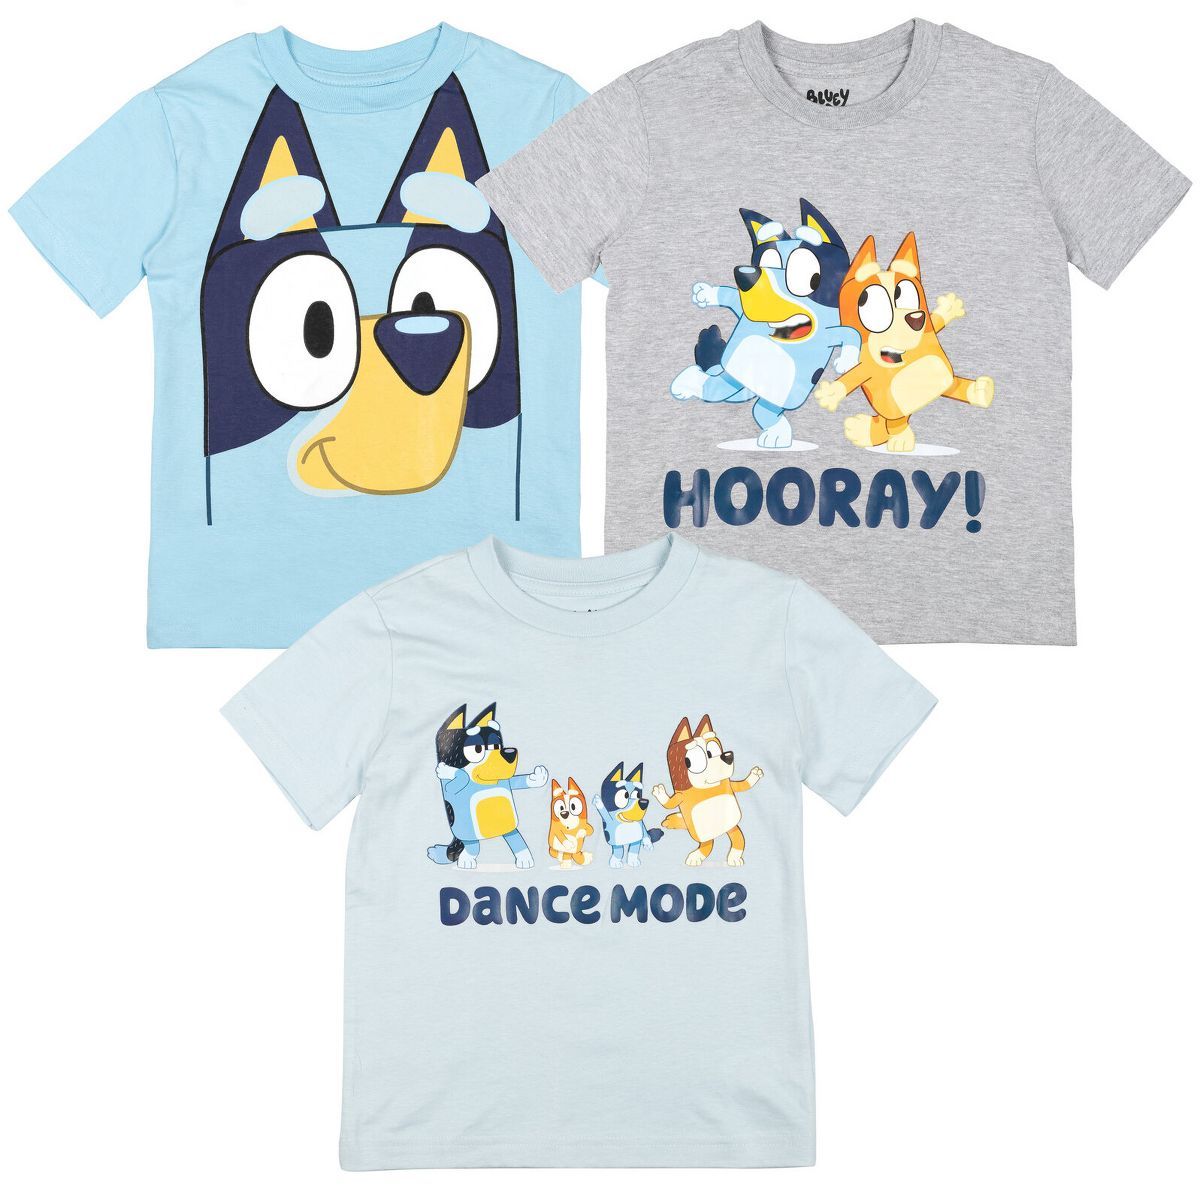 Bluey Bingo 3 Pack Graphic T-Shirts Toddler to Big Kid | Target